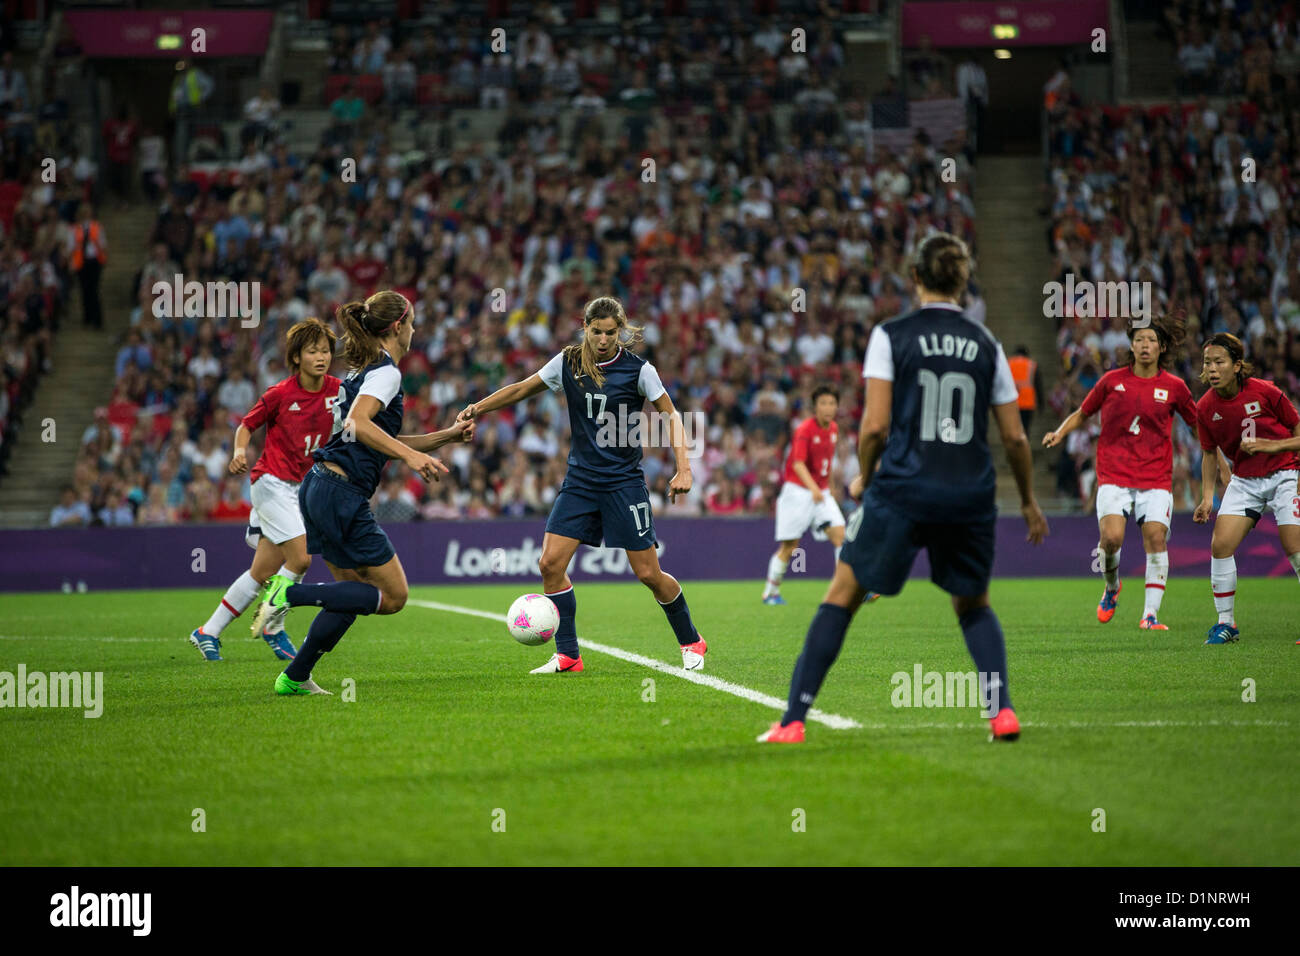 Tobin Heath (USA)-17-USA remporte l'or sur le Japon en femmes Football (soccer) aux Jeux Olympiques d'été, Londres 2012 Banque D'Images